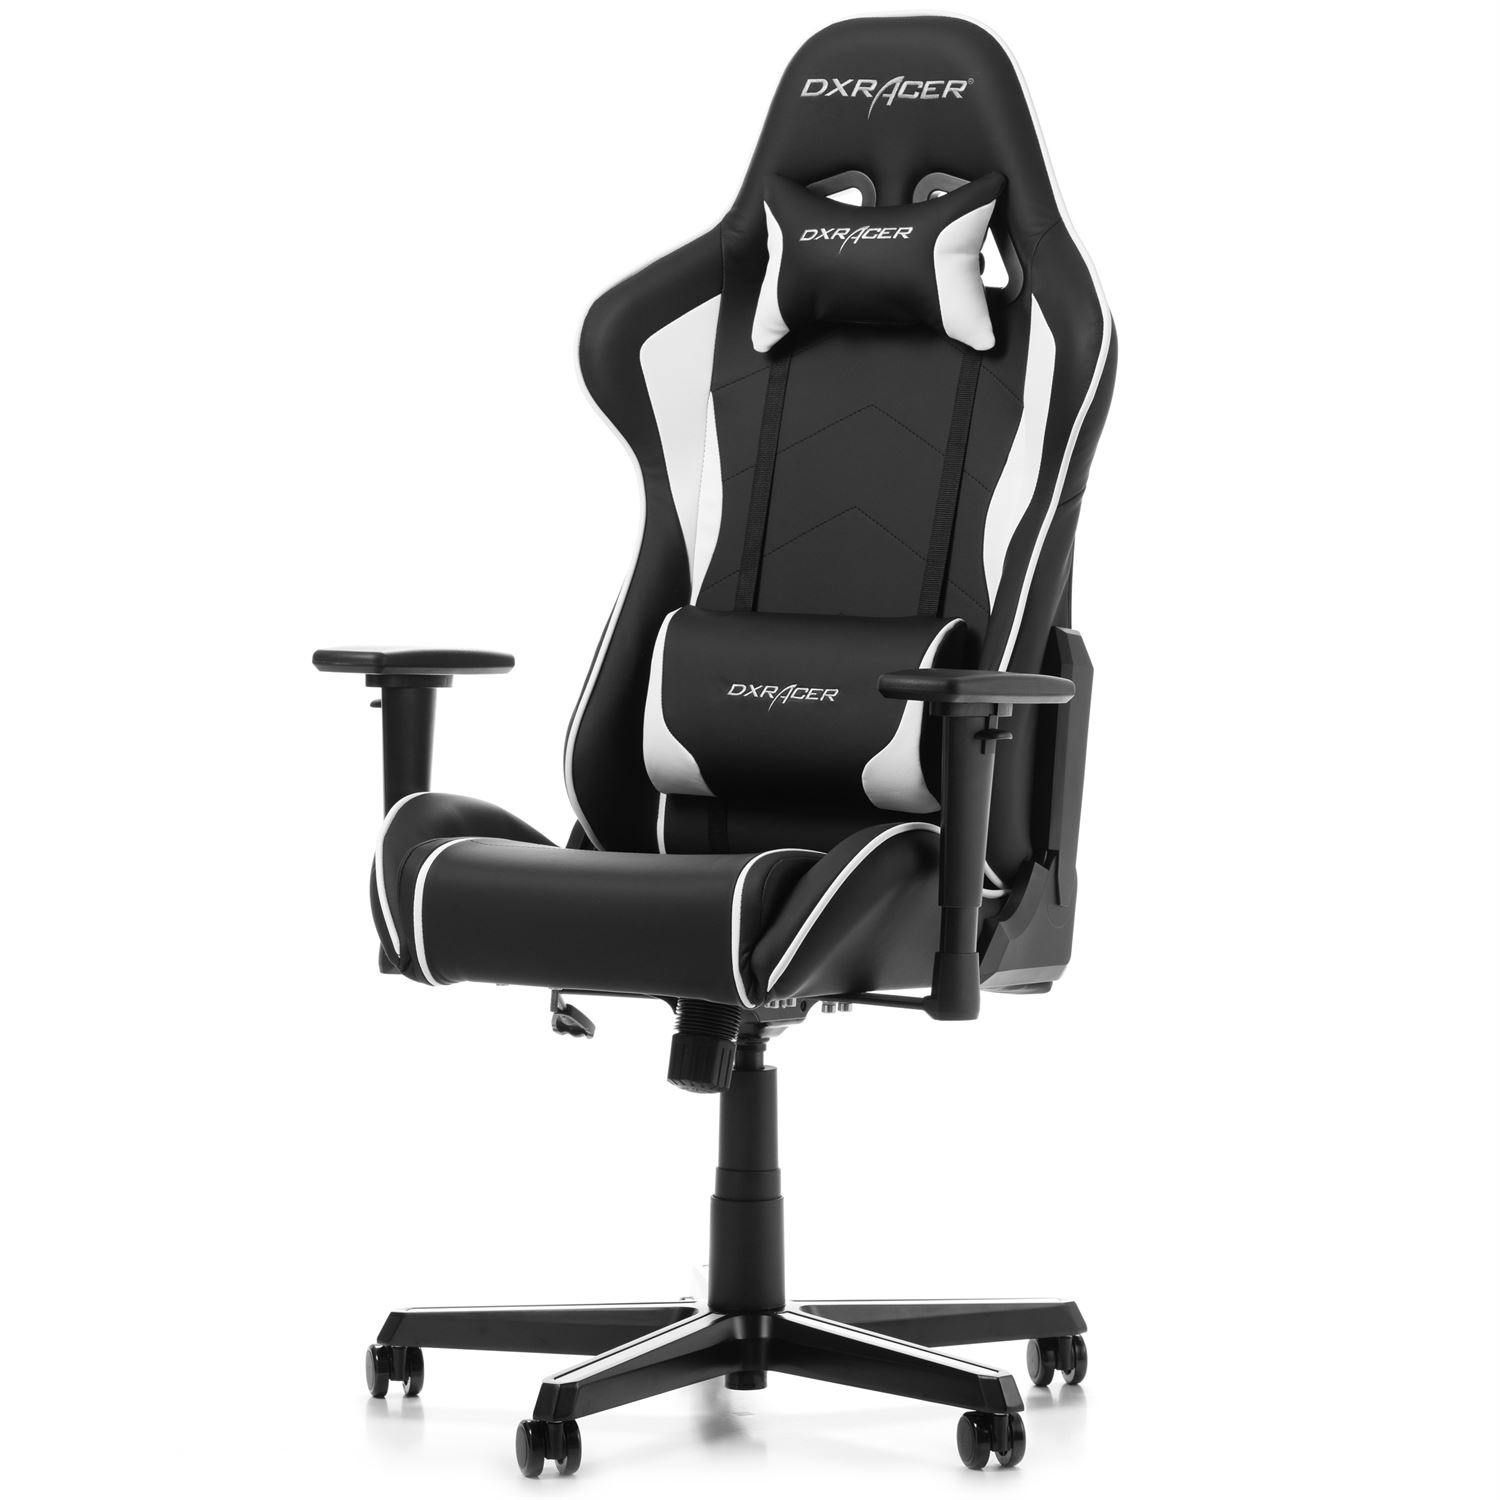  DXRacer  FORMULA Gaming  Chair F08 NW K b hos Geekunit dk